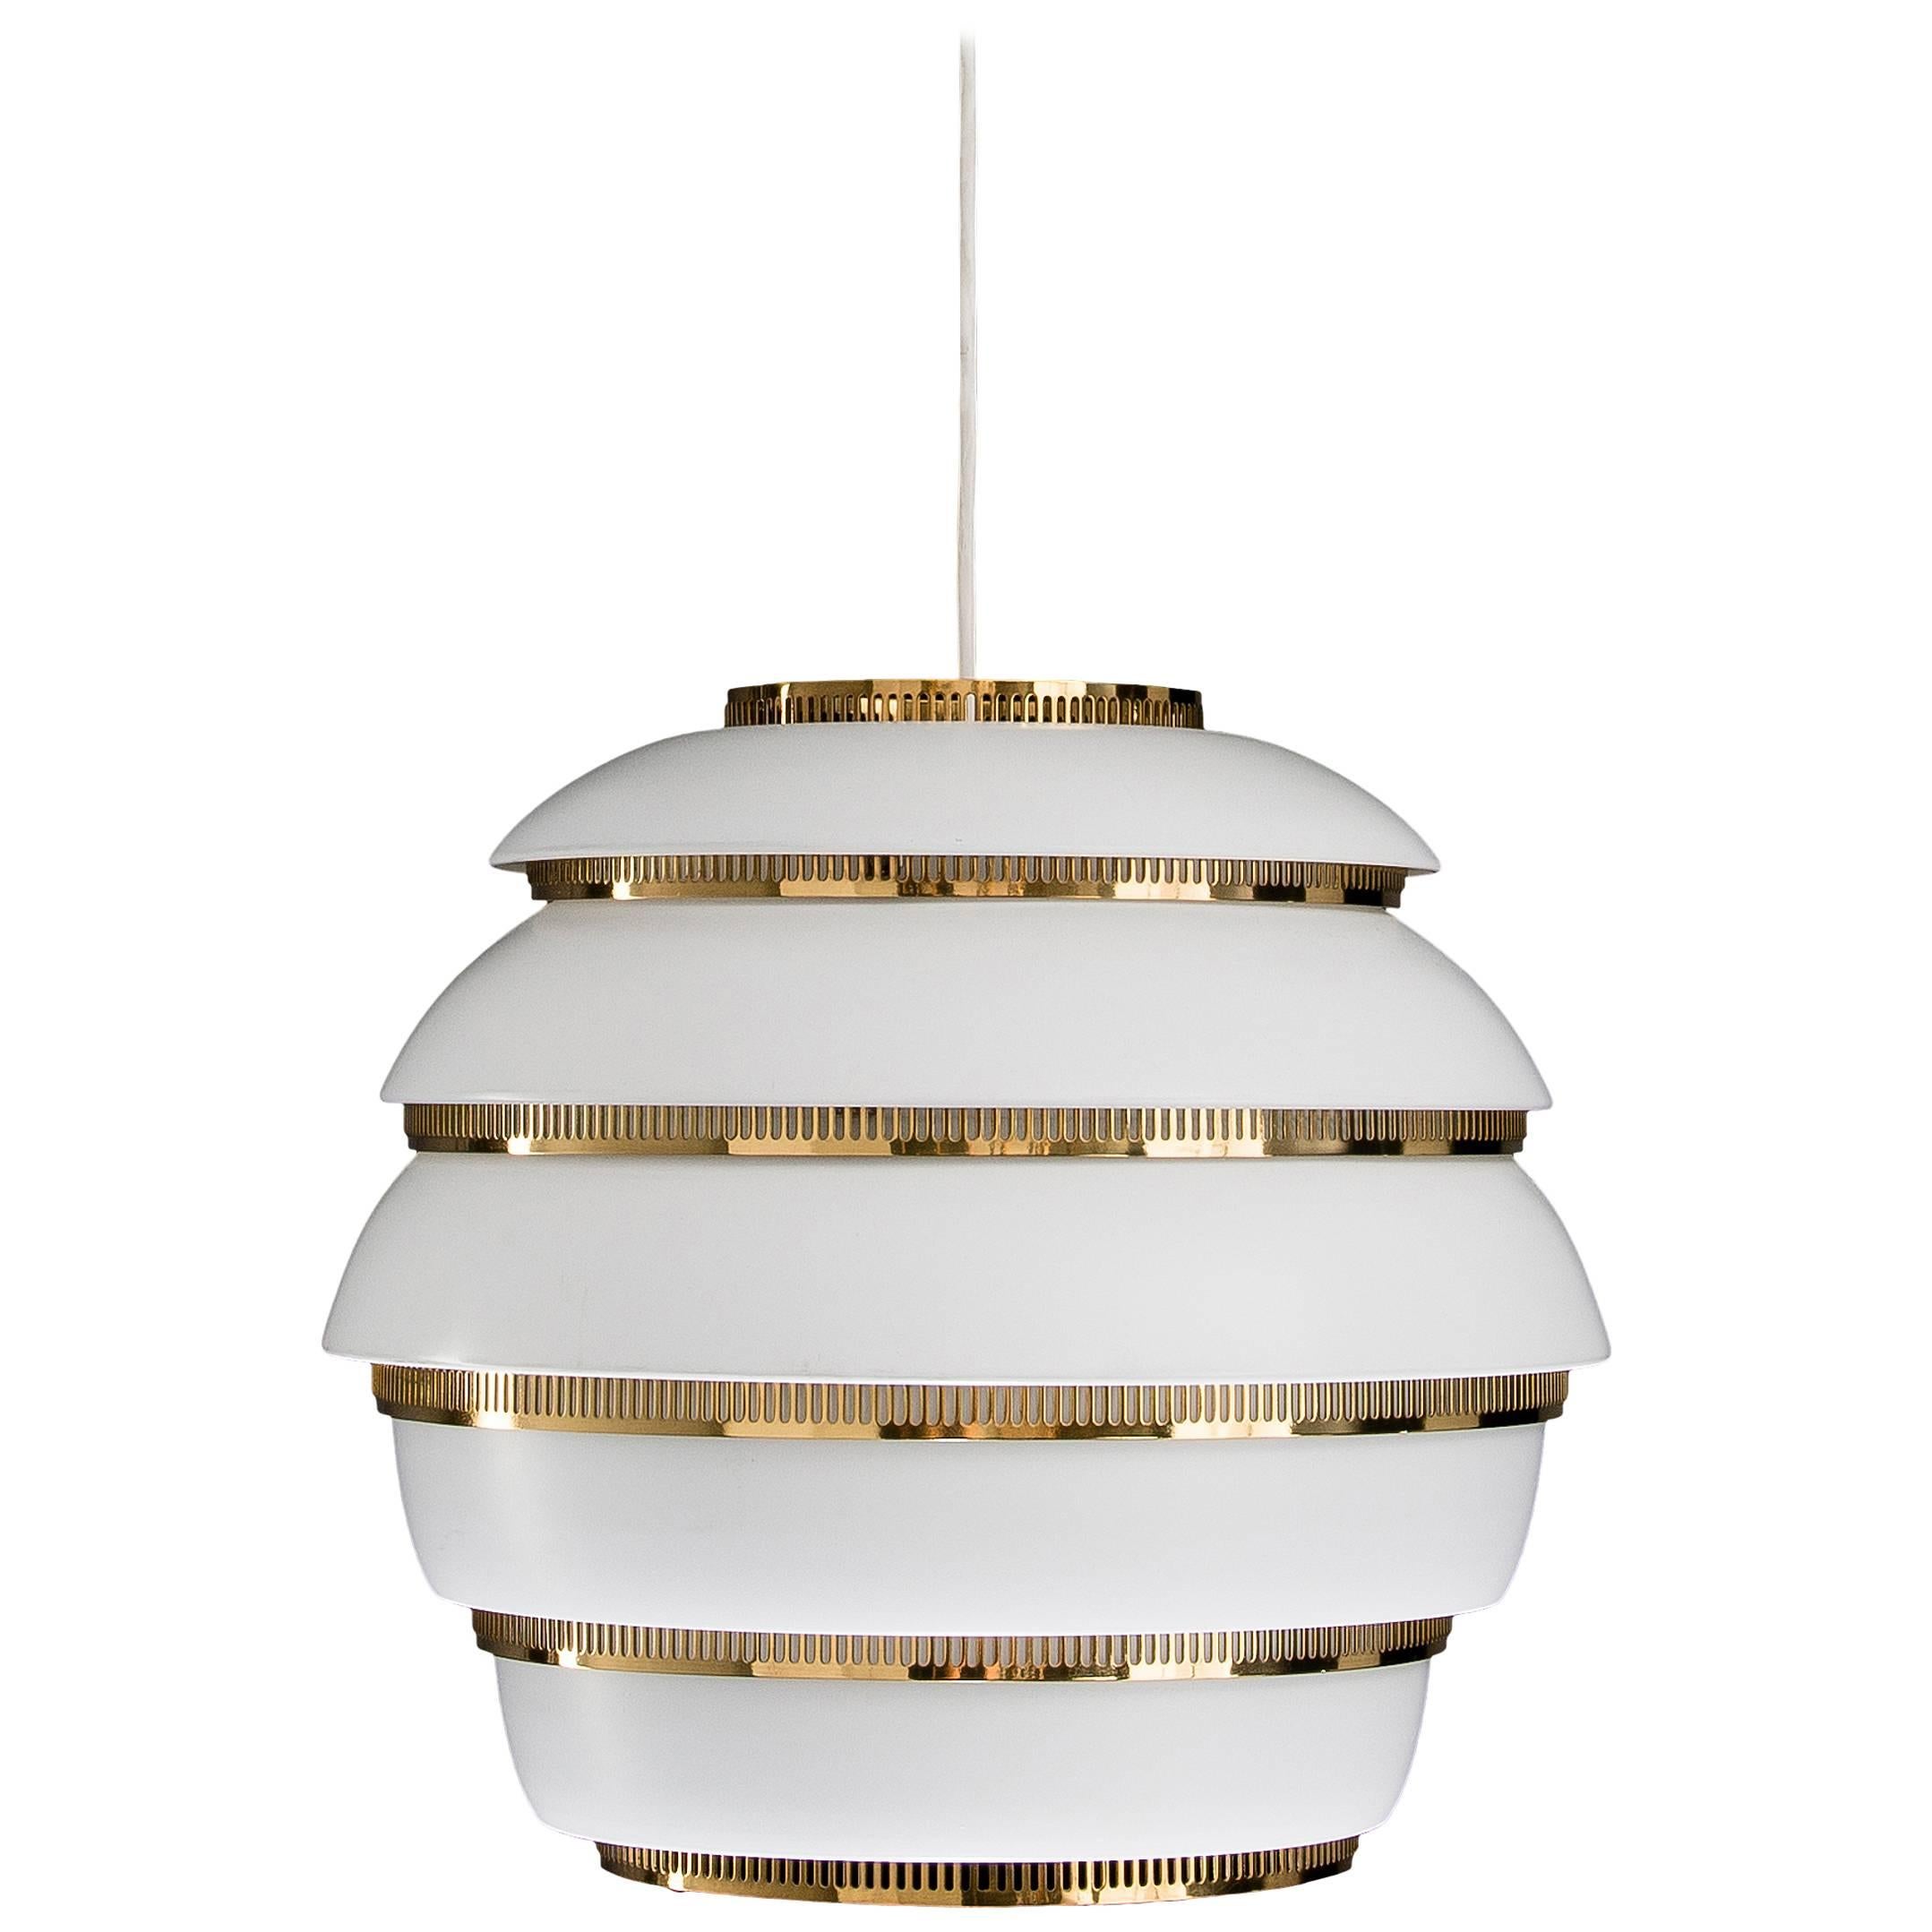 Alvar Aalto ‘Beehive’ Ceiling Lamps Model No. A 331